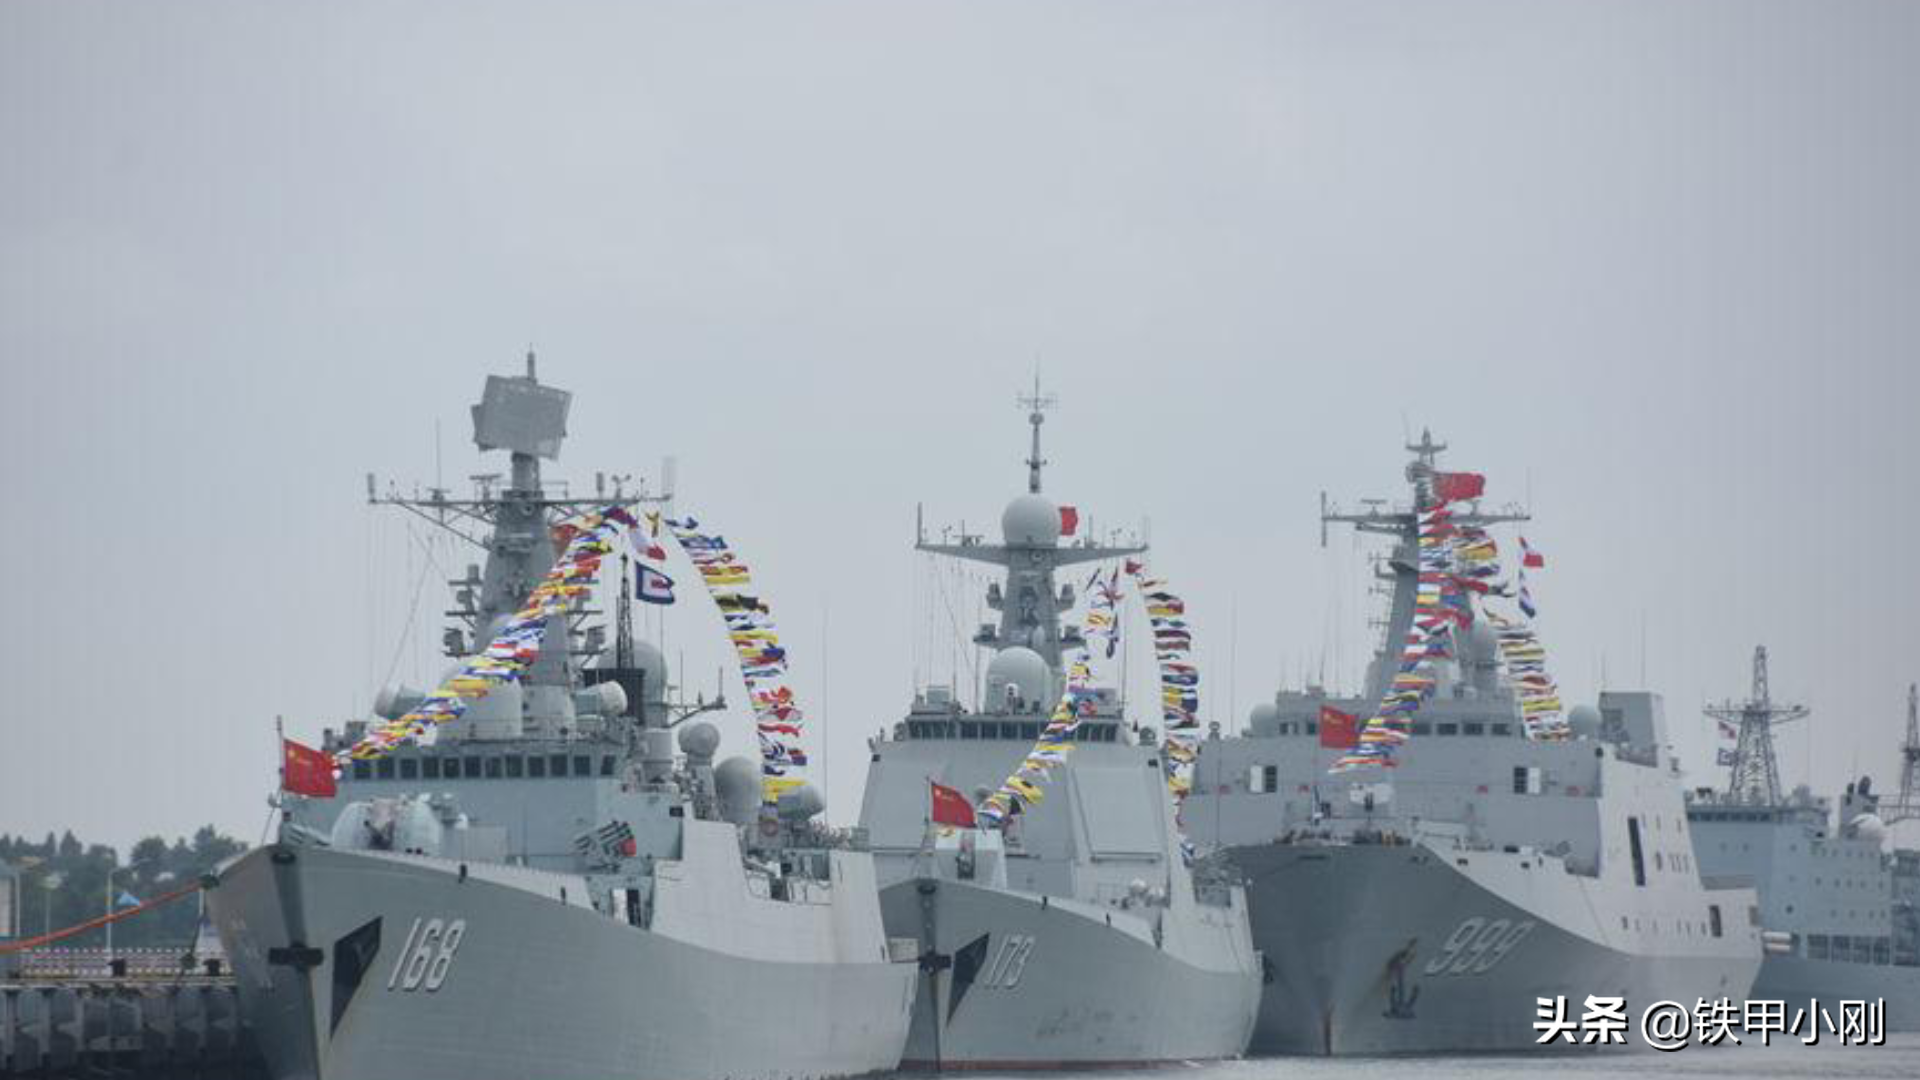 俄羅斯閱兵居然懸掛"日本旗"？ 我國軍艦也一樣懸掛"日本旗"?